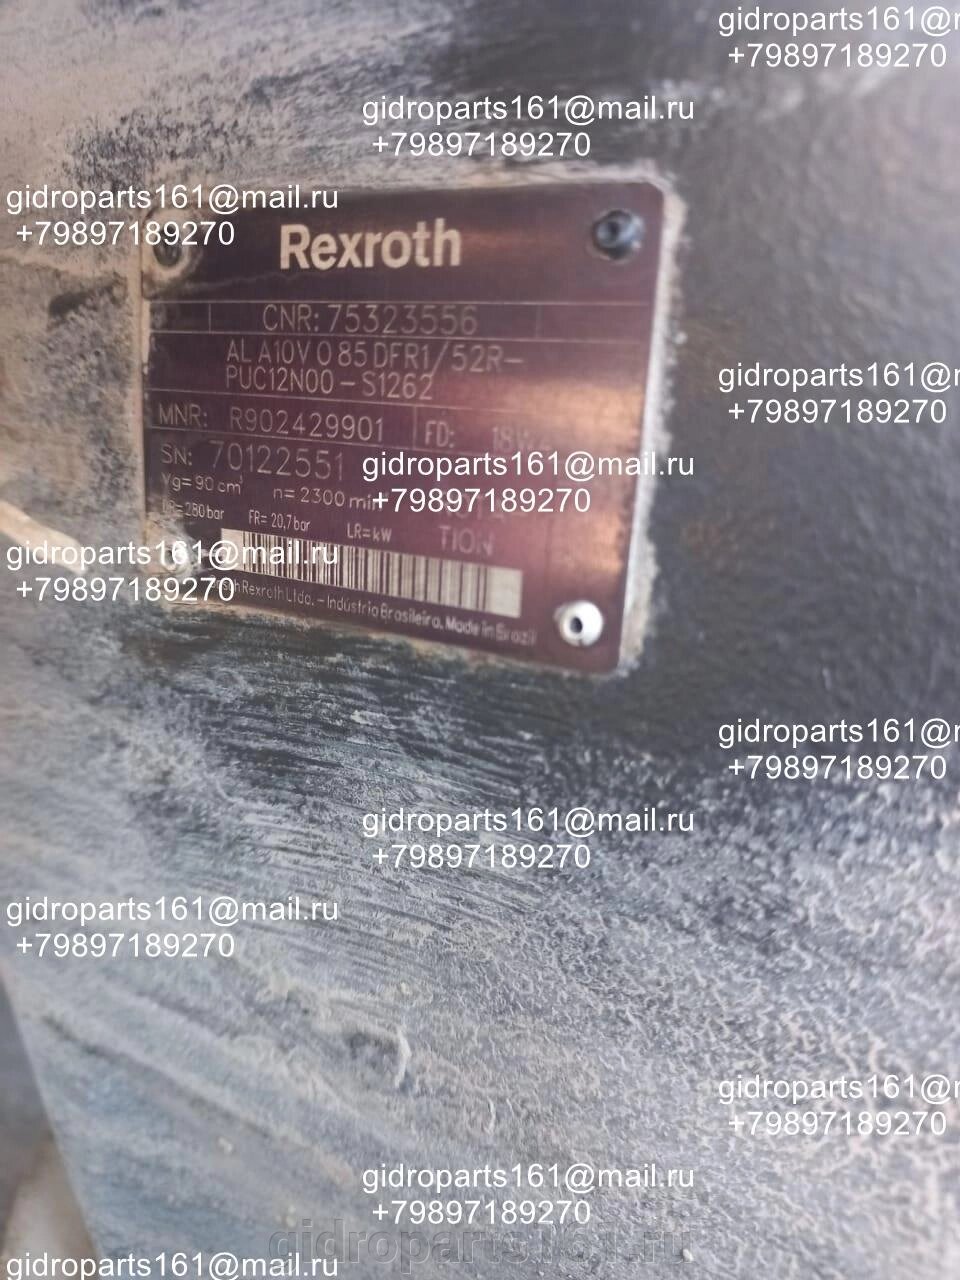 Гидравлический насос REXROTH AL A10V O 85 DFR1/52R-PUC12N00-S1262 от компании Гидравлические запчасти 161 - фото 1